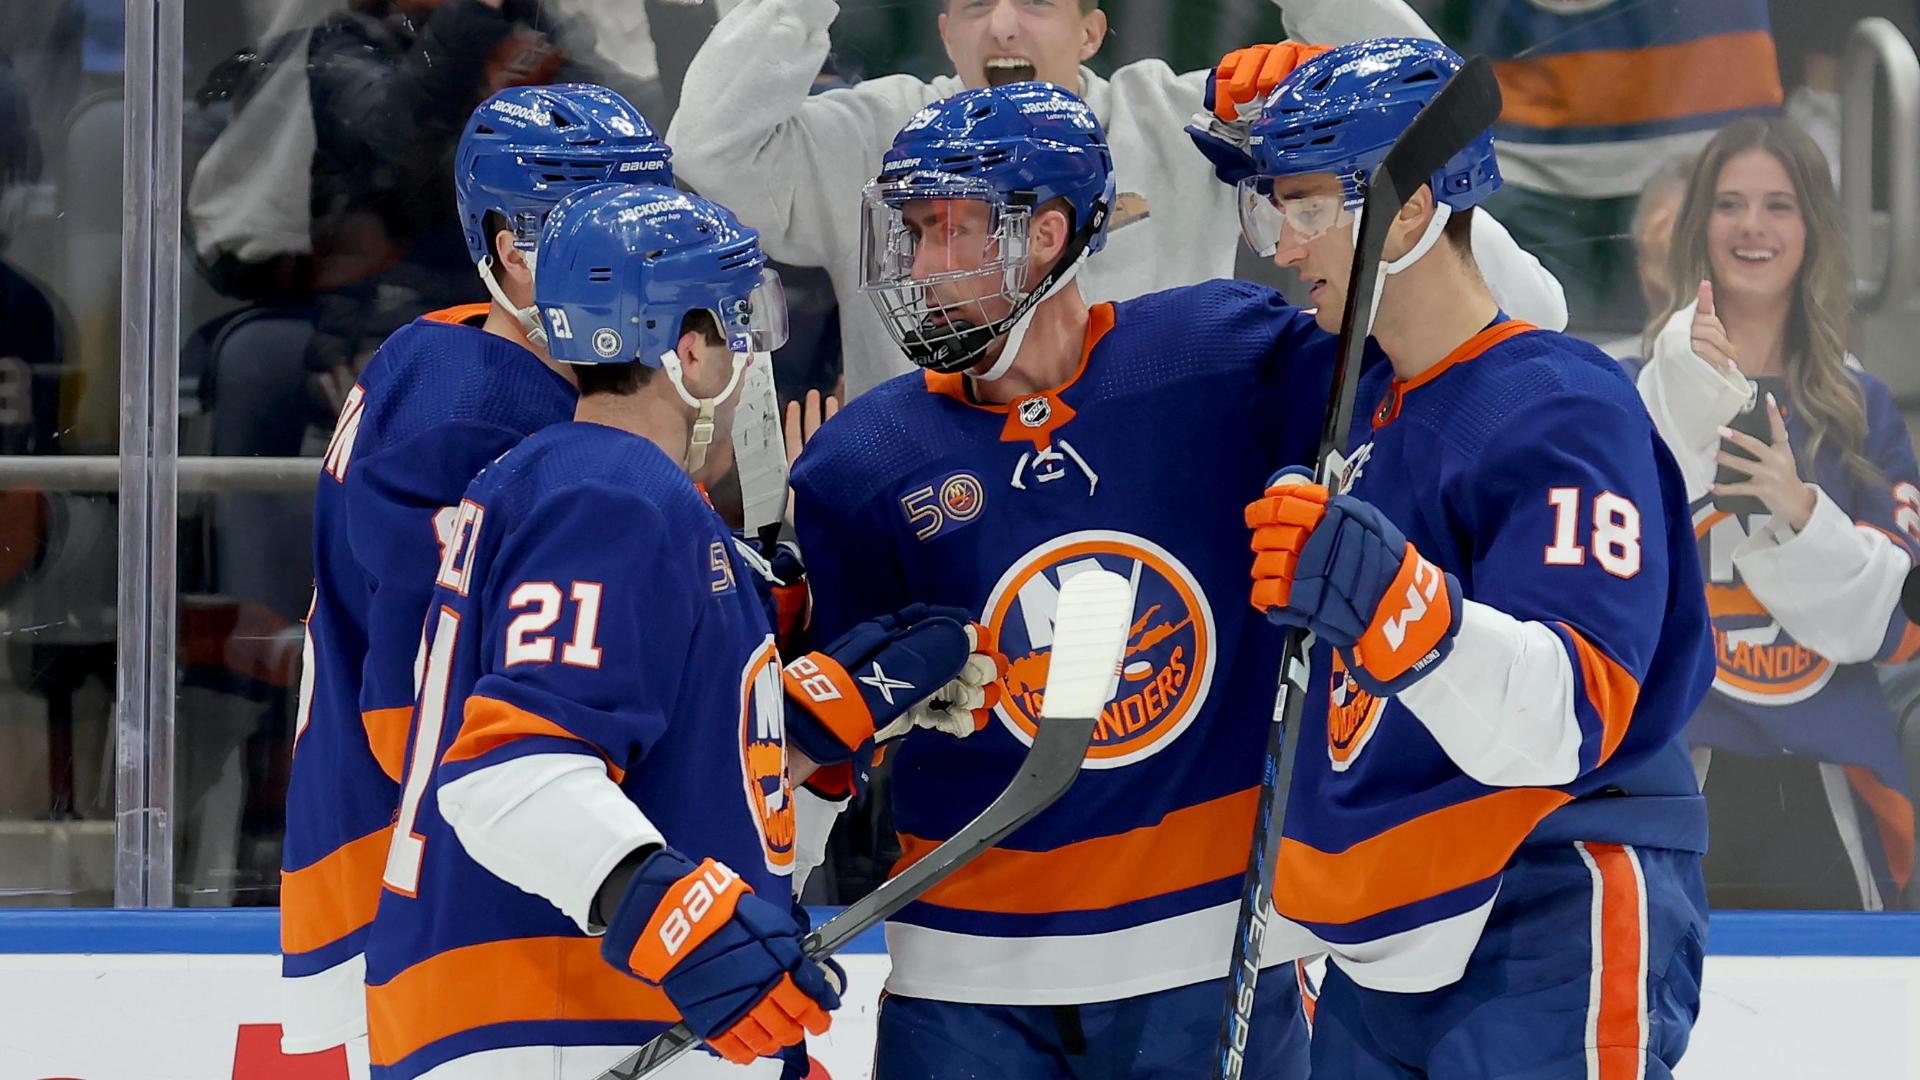 New York Islanders - Brock Nelson named an alternate captain of